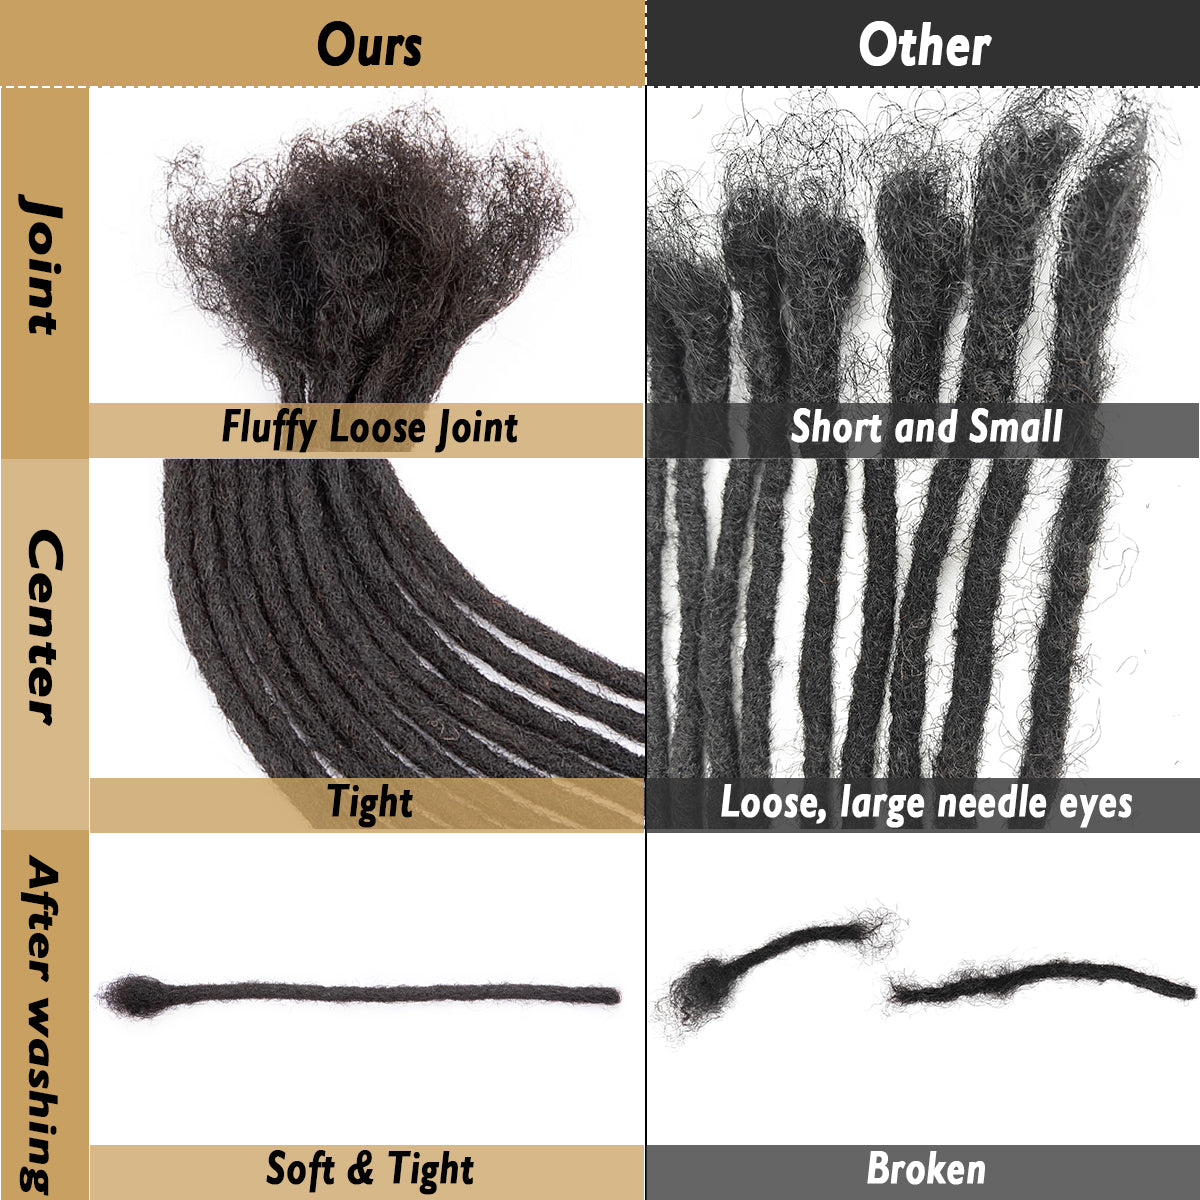 Blonde Dreads Extensions 613 # Dreadlocks de Cheveux Humains 8 Pouces Locs Cheveux 0.4cm-0.8cm